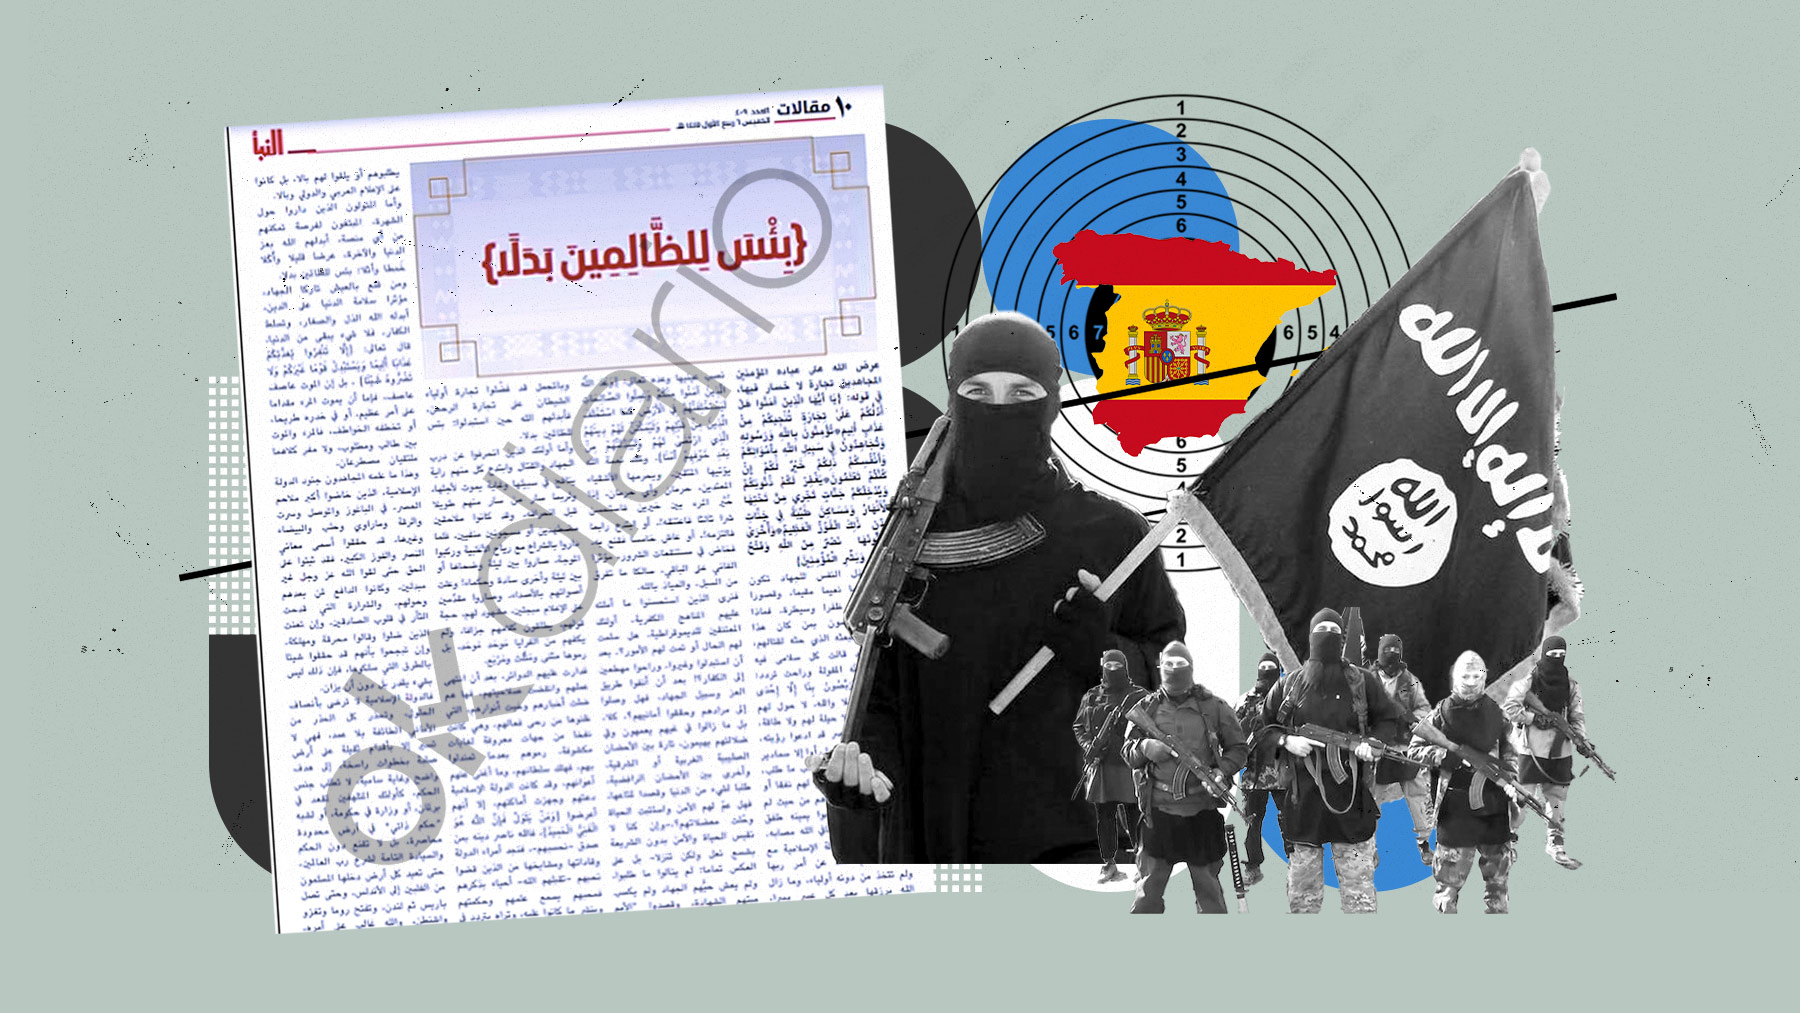 El boletín interno del ISIS vuelve a poner a España en la diana del yihadismo.